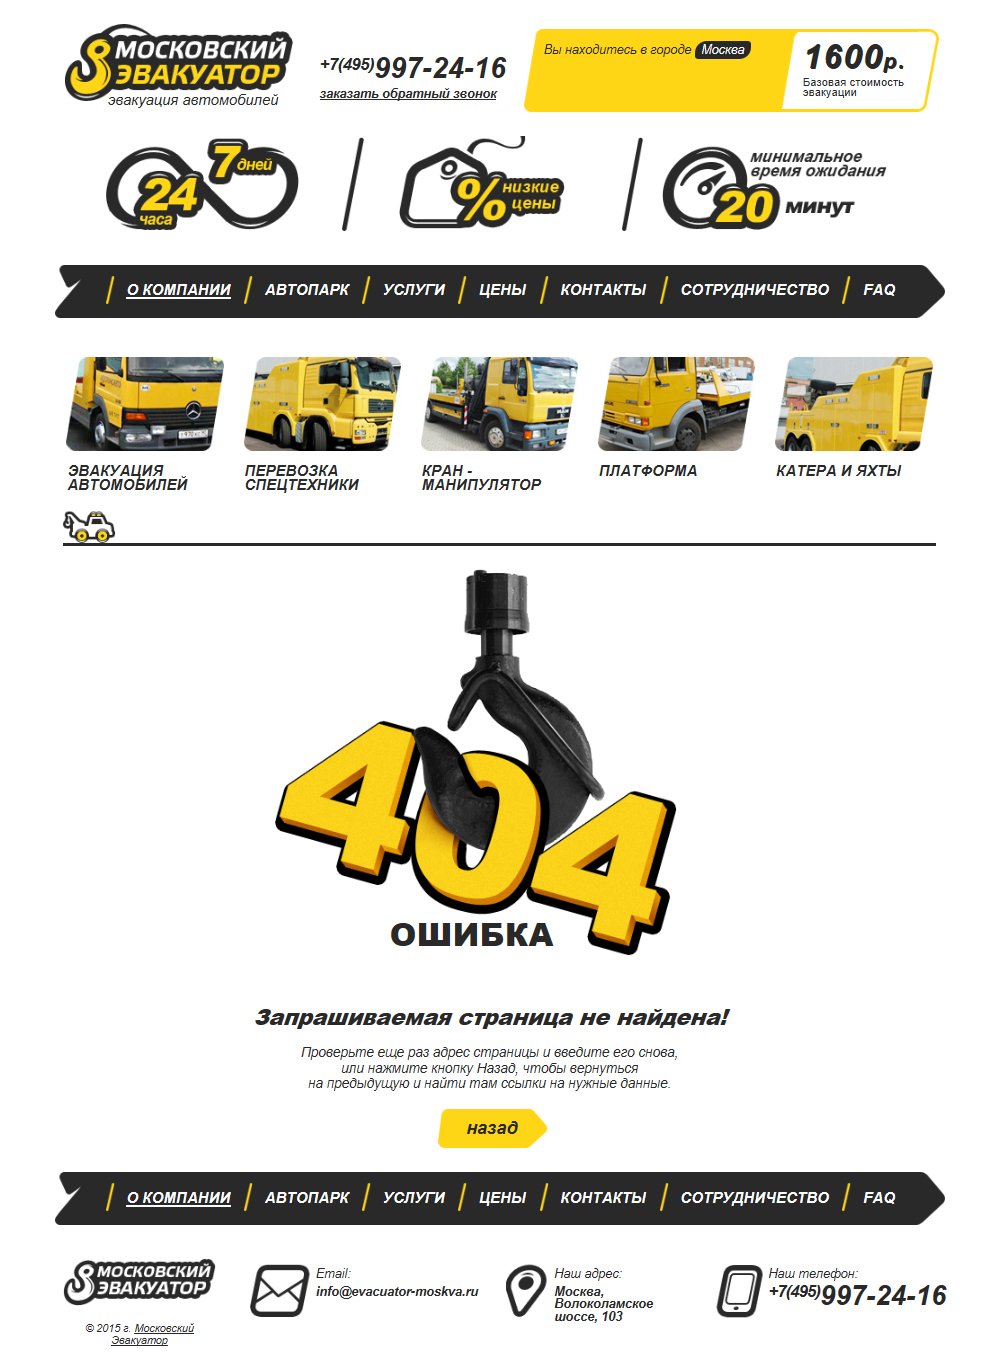 Ошибка 404 на сайте компании Московский эвакуатор